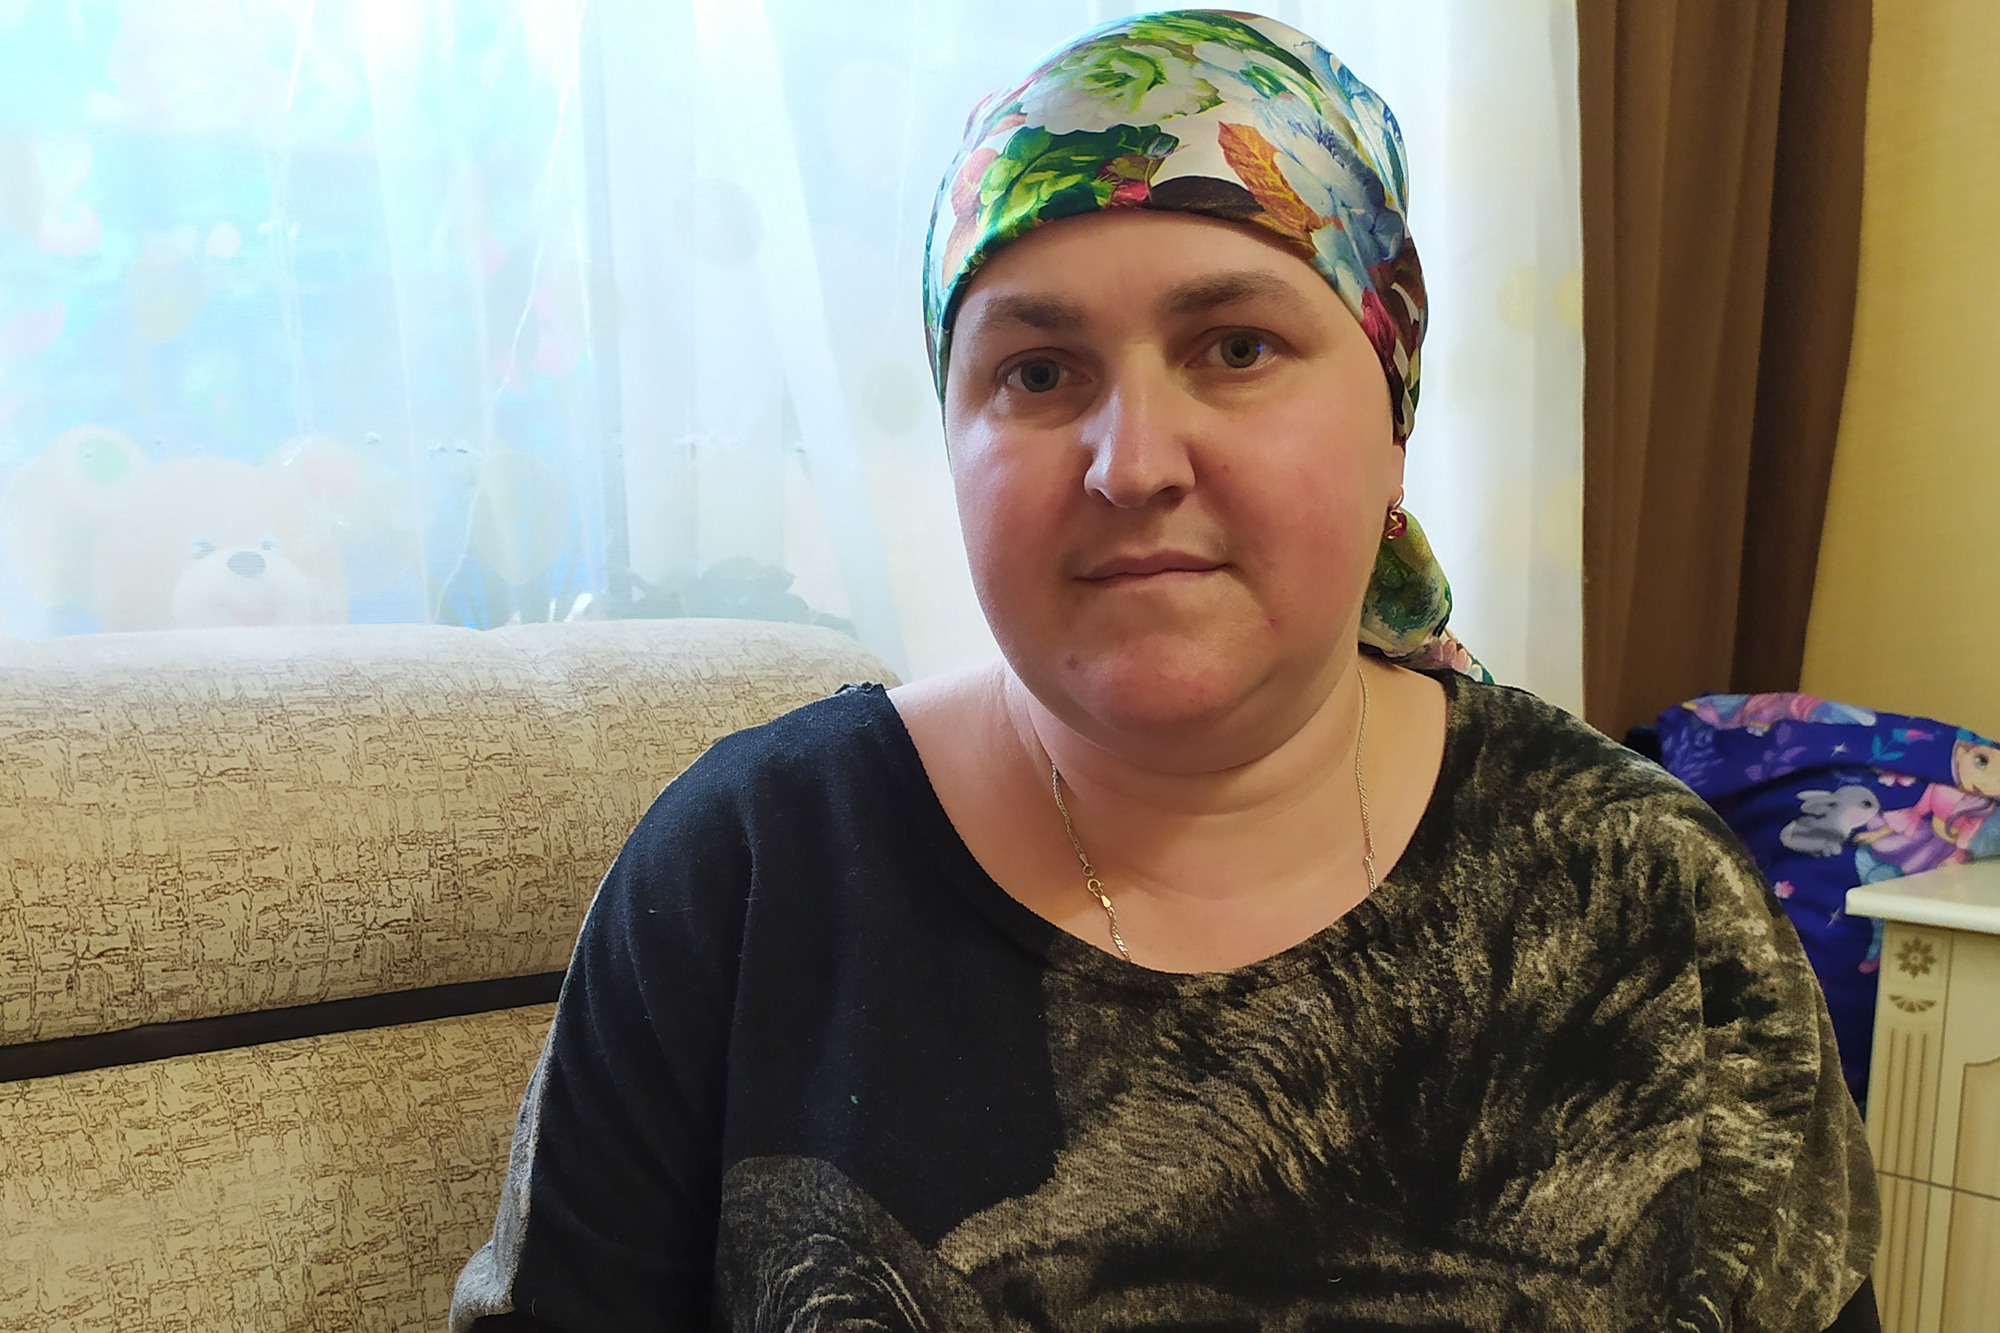 Юлия Вольнова снова собирает деньги на лечение онкологии (обновлено)